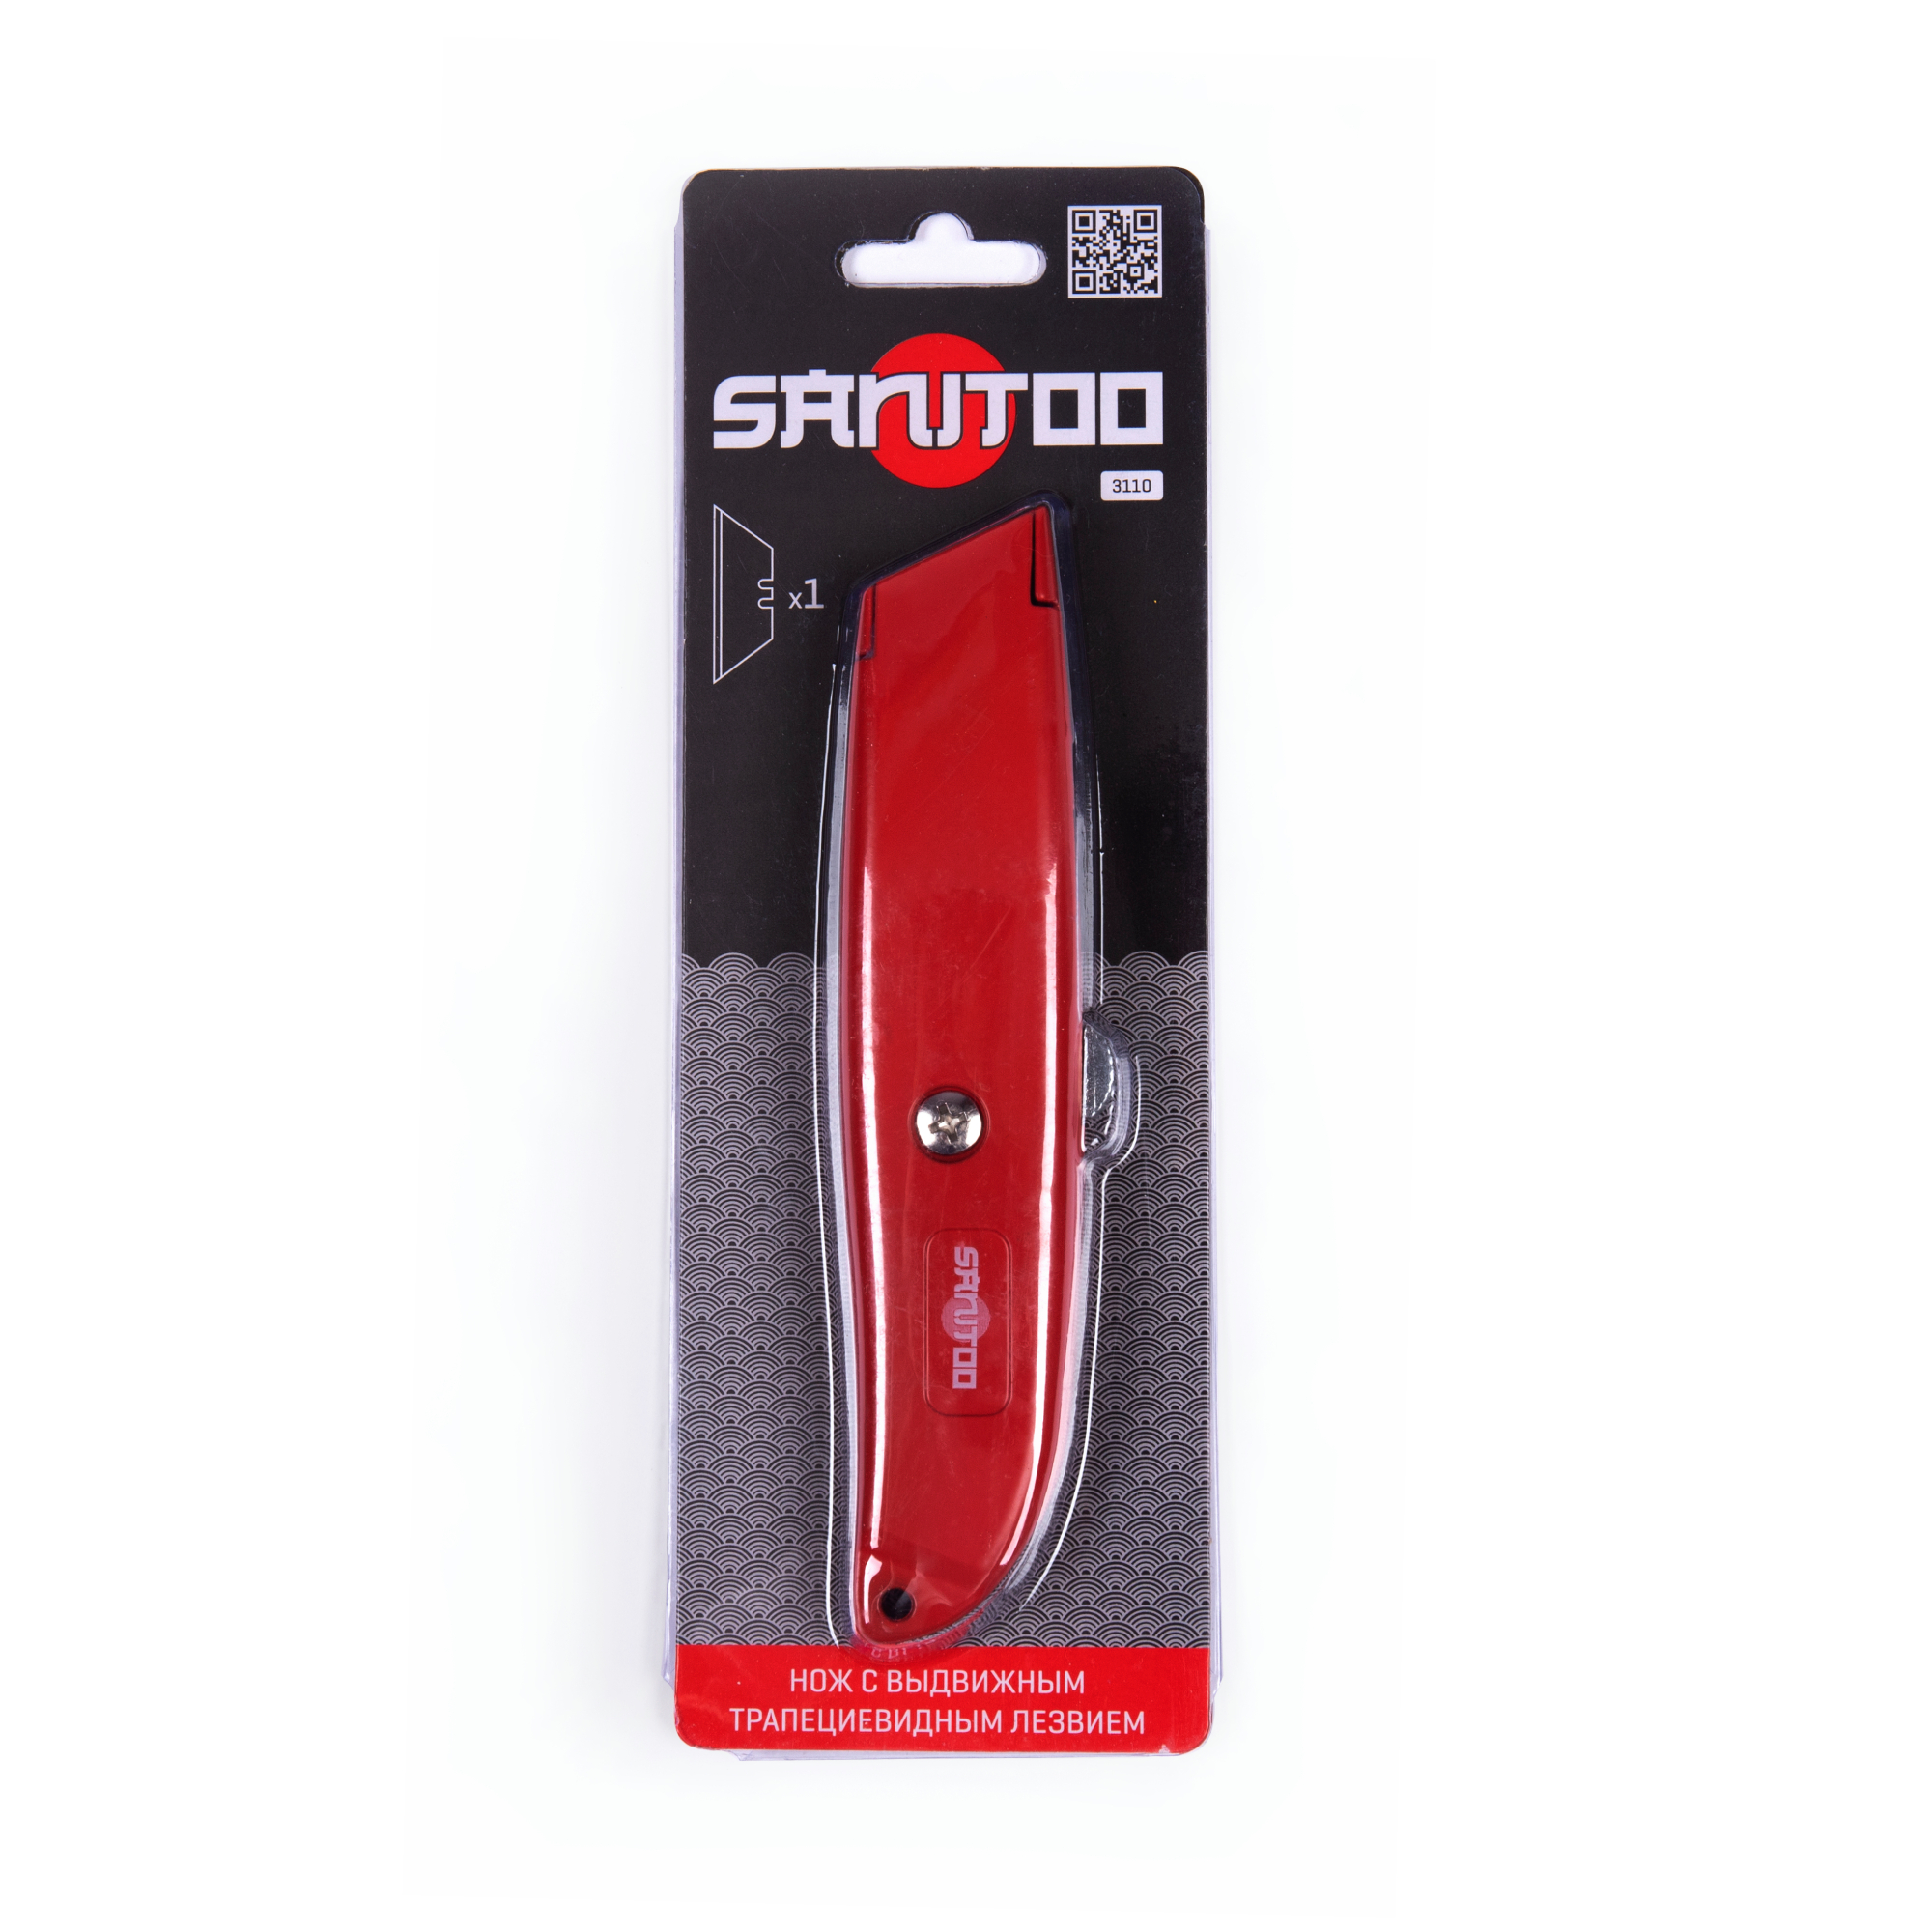 нож sanitoo heavy duty с трапециевидным лезвием Нож Sanitoo с выдвижным трапециевидным лезвием